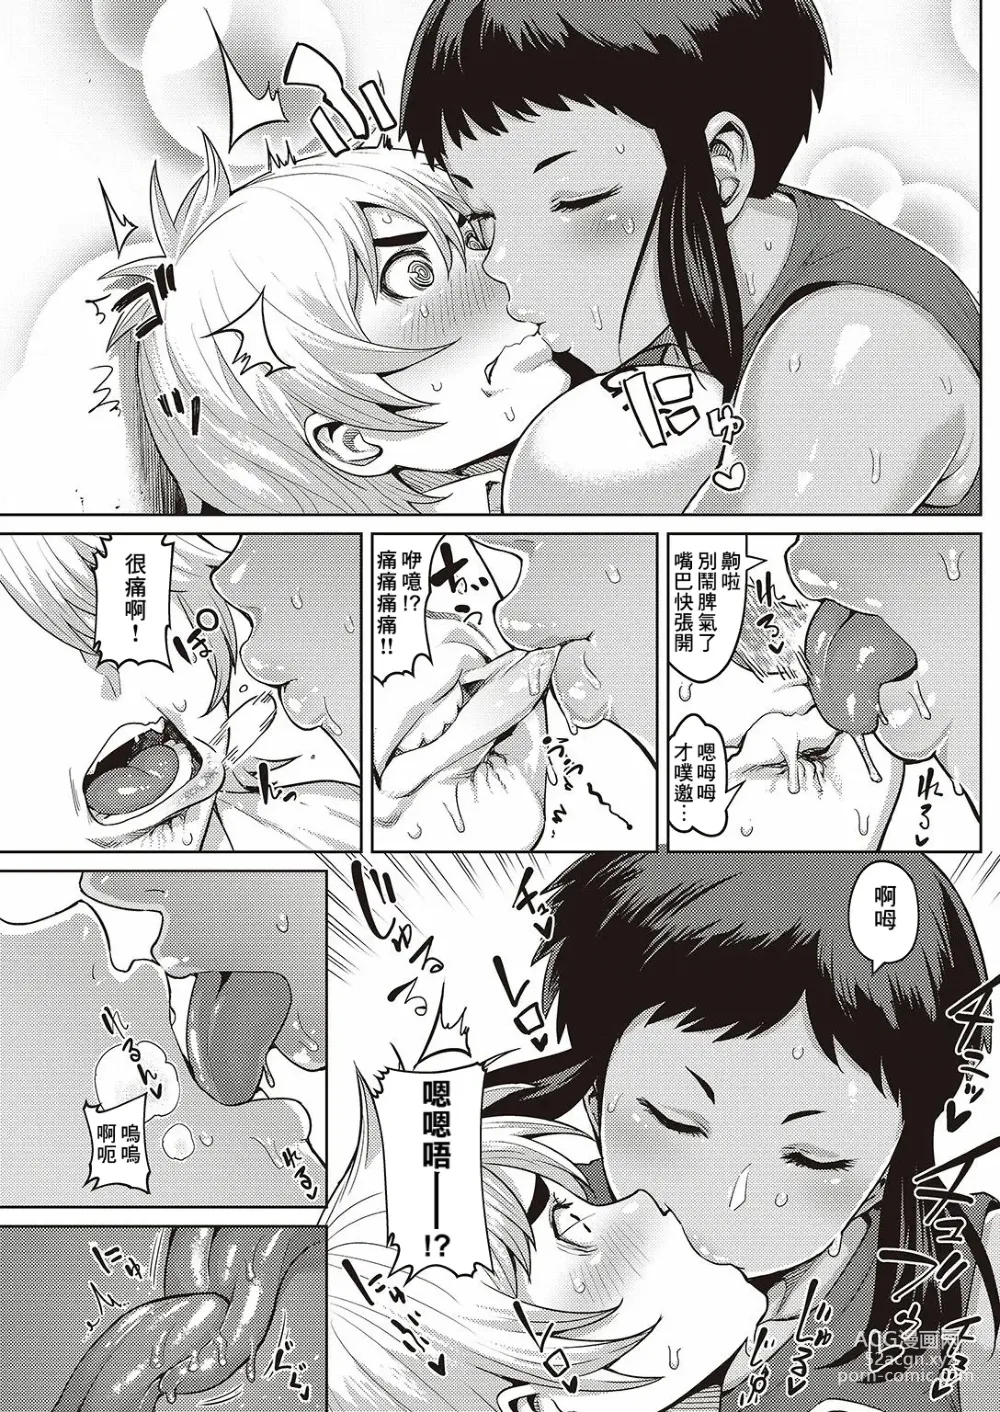 Page 5 of manga Chiisana Kimi dakara…